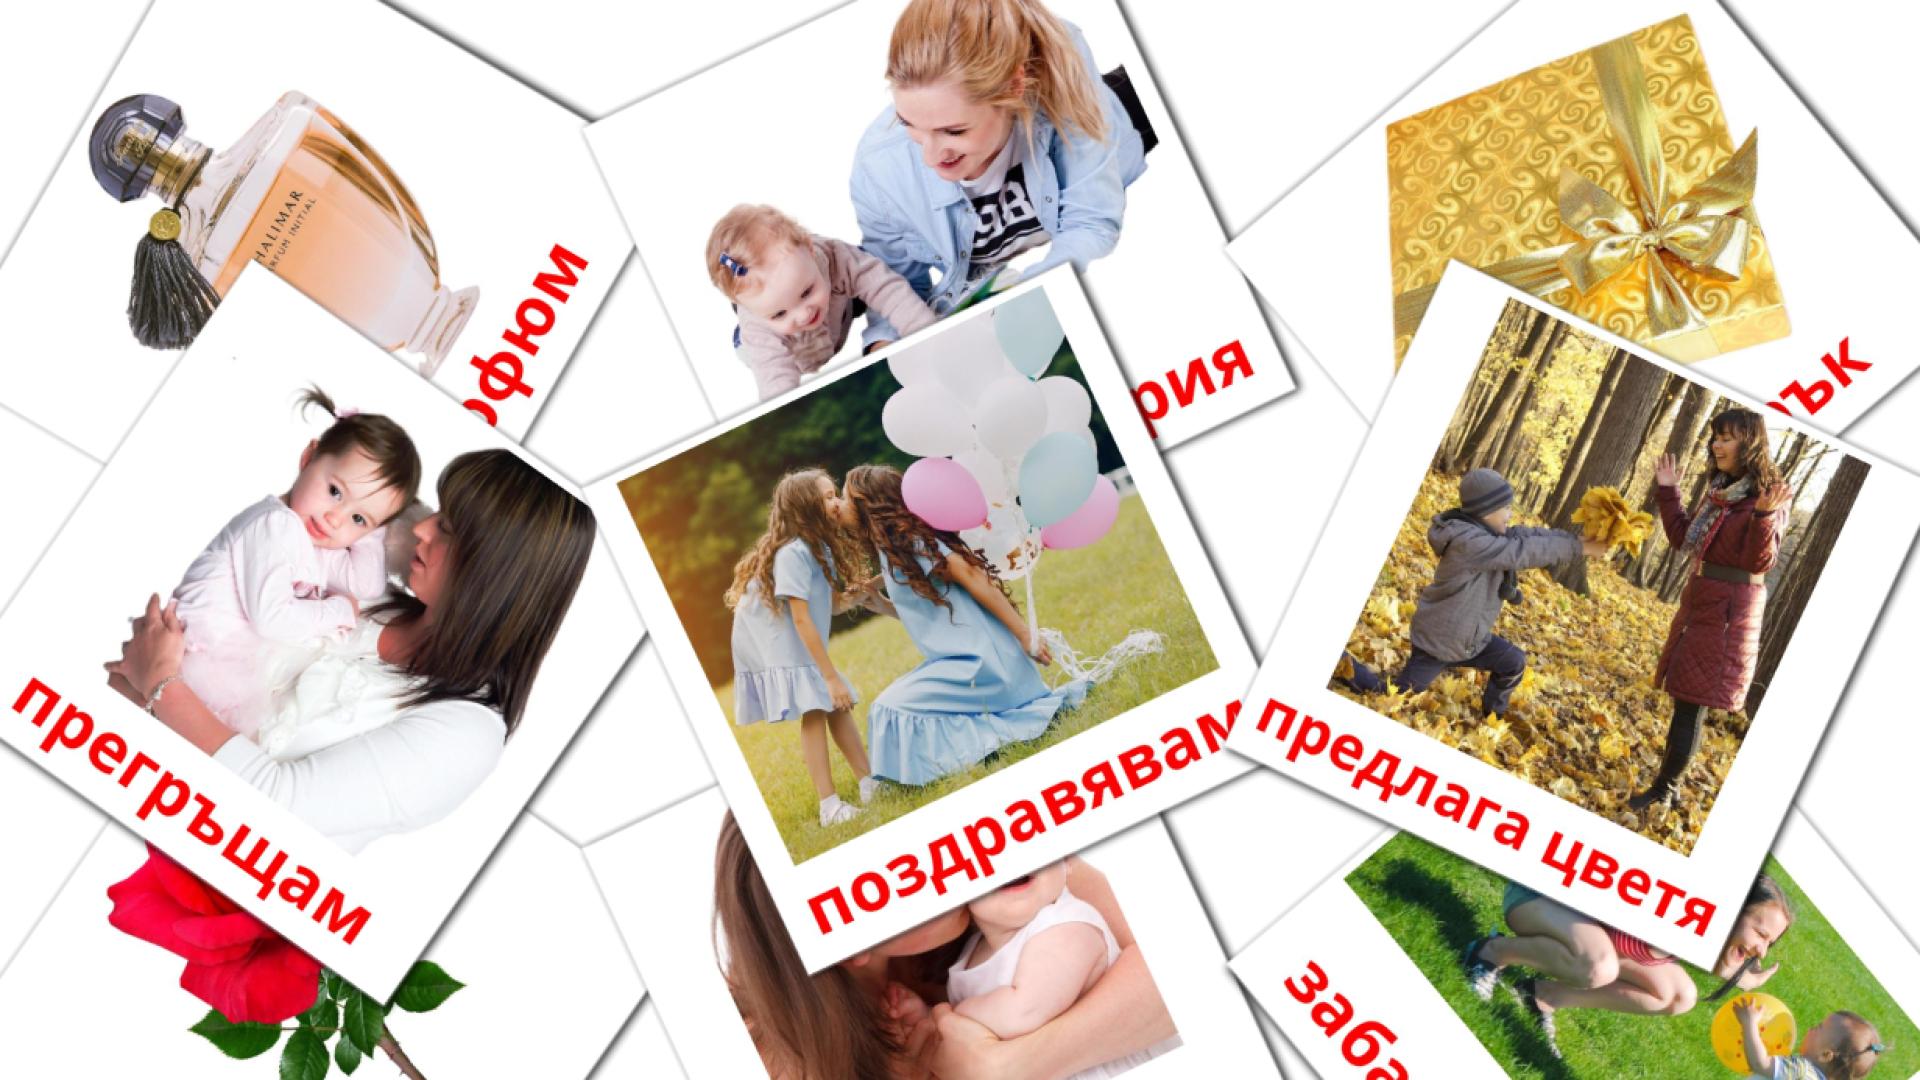 Moederdag - bulgaarsee woordenschatkaarten